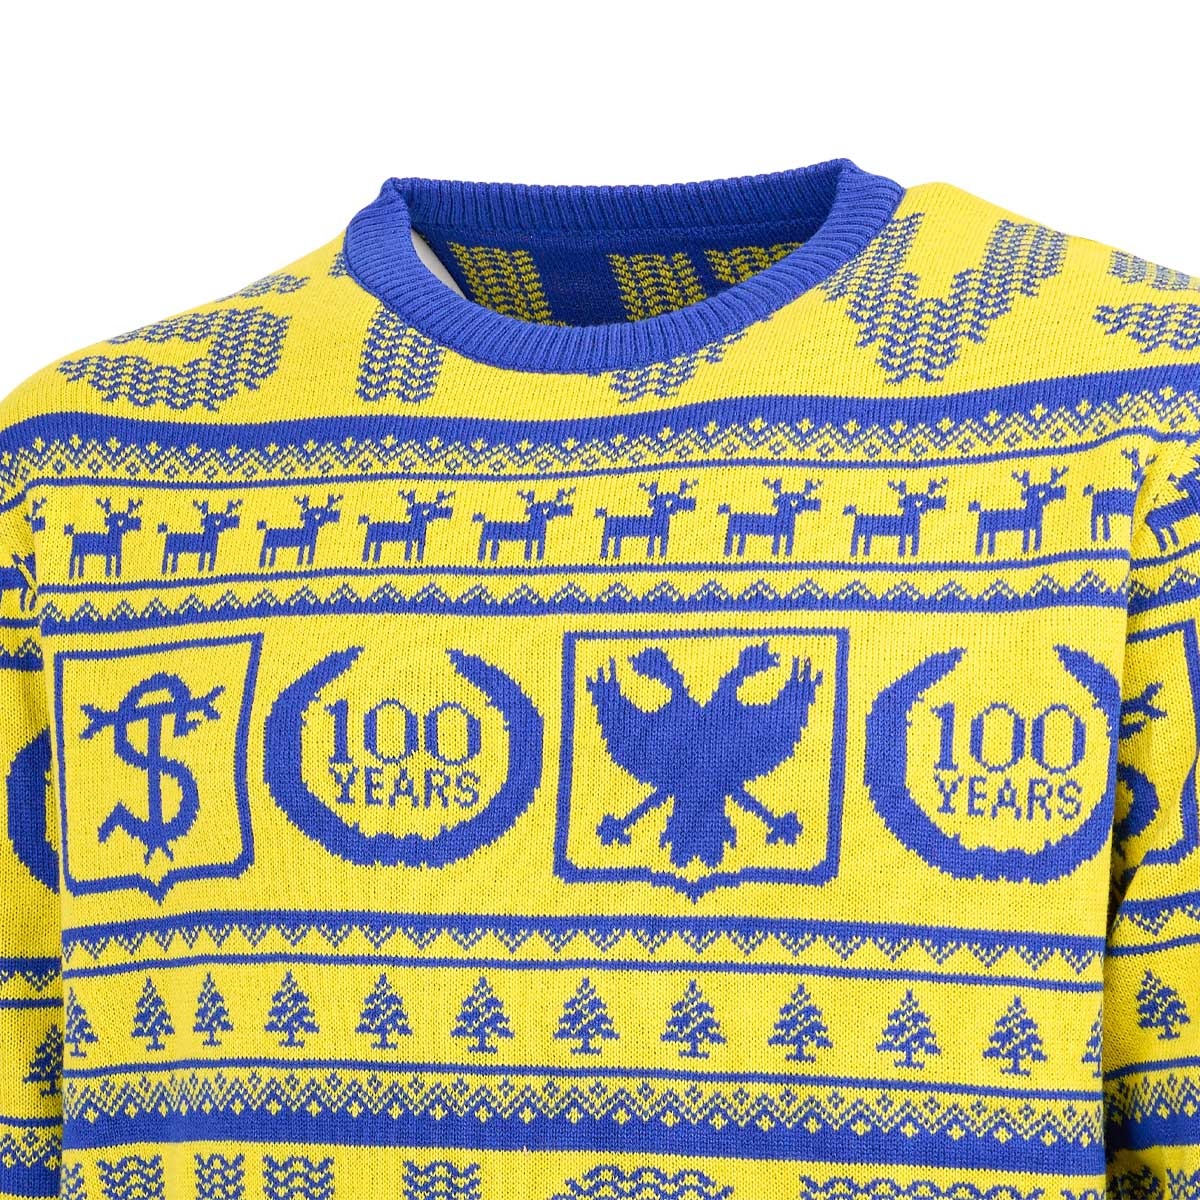 Topfanz Christmas sweater 100 jaar STVV